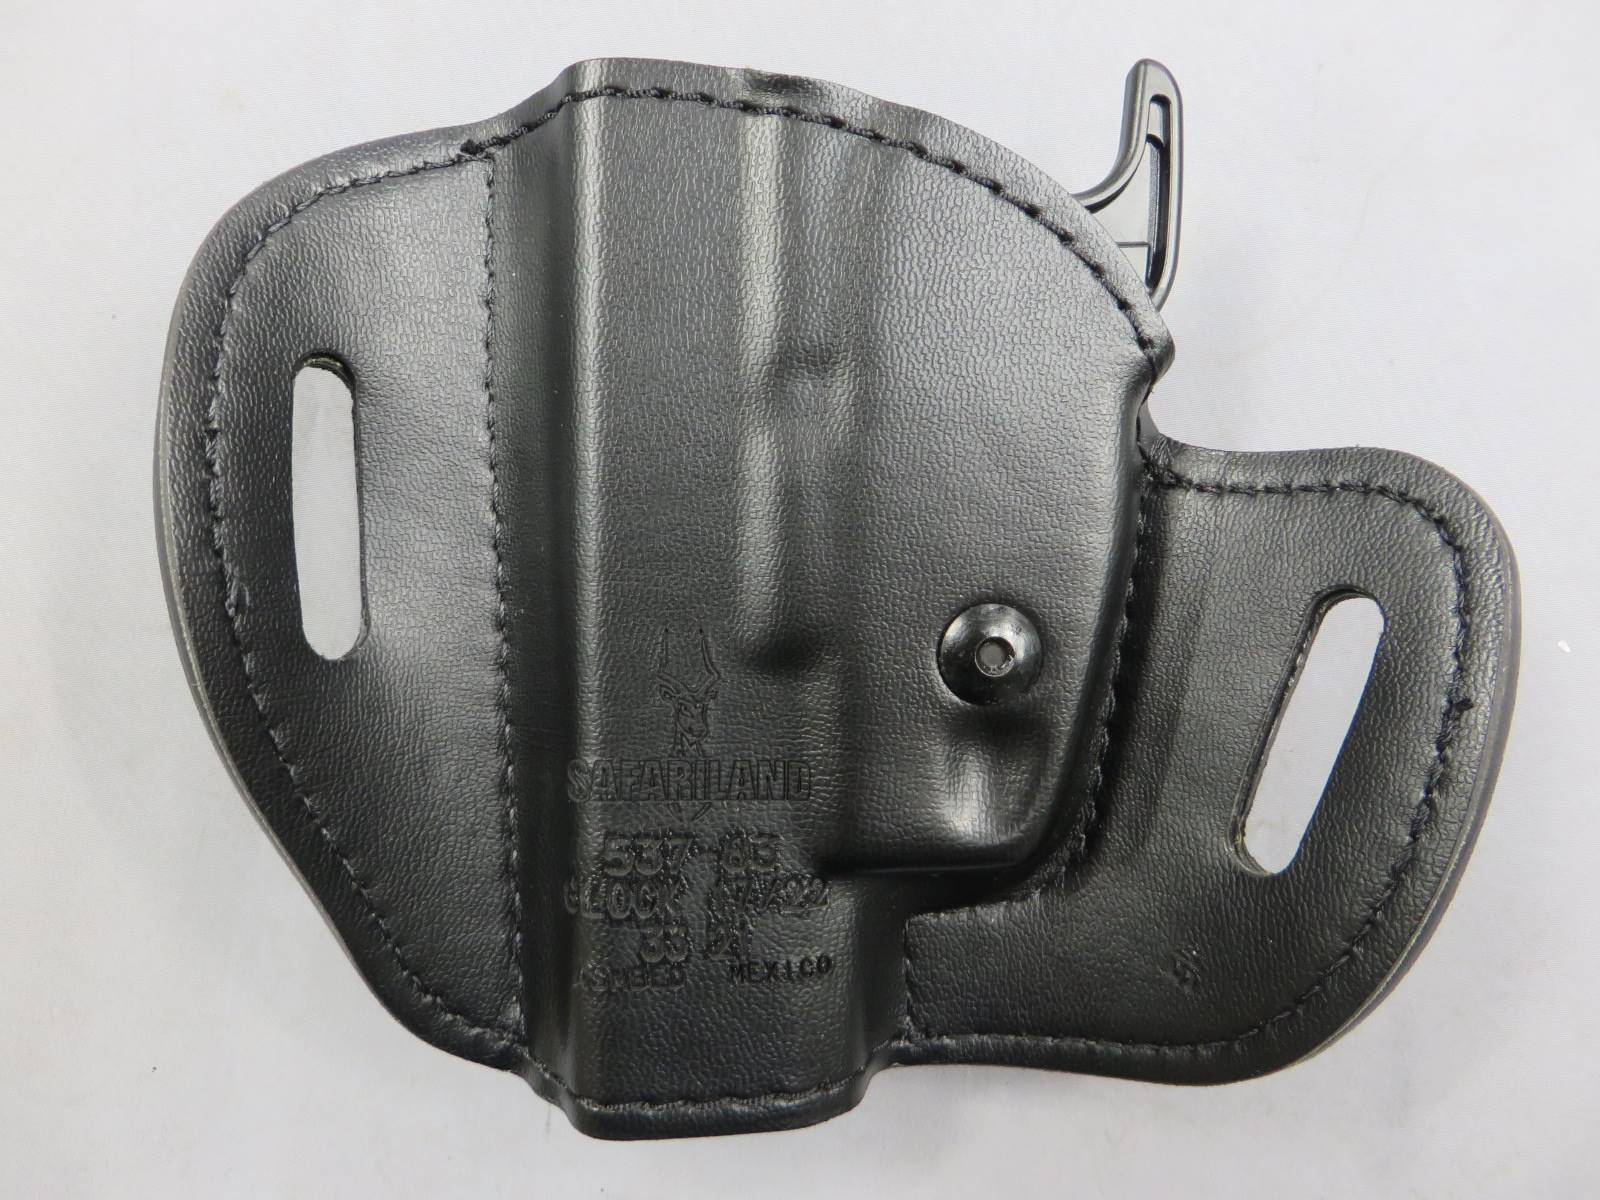 【サファリランド】Glock 17 対応 コンシールメント ホルスター DUTY GEAR